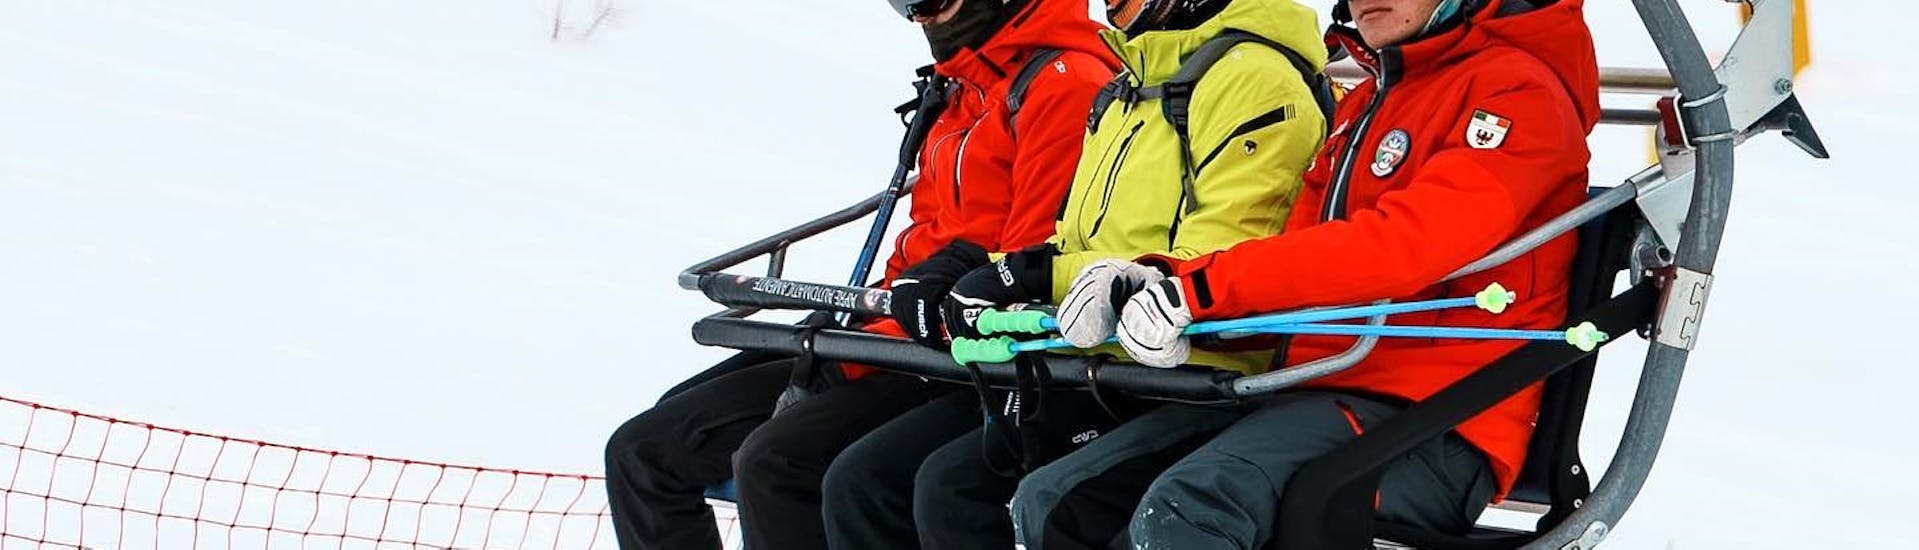 Skilessen voor kinderen vanaf 14 jaar.